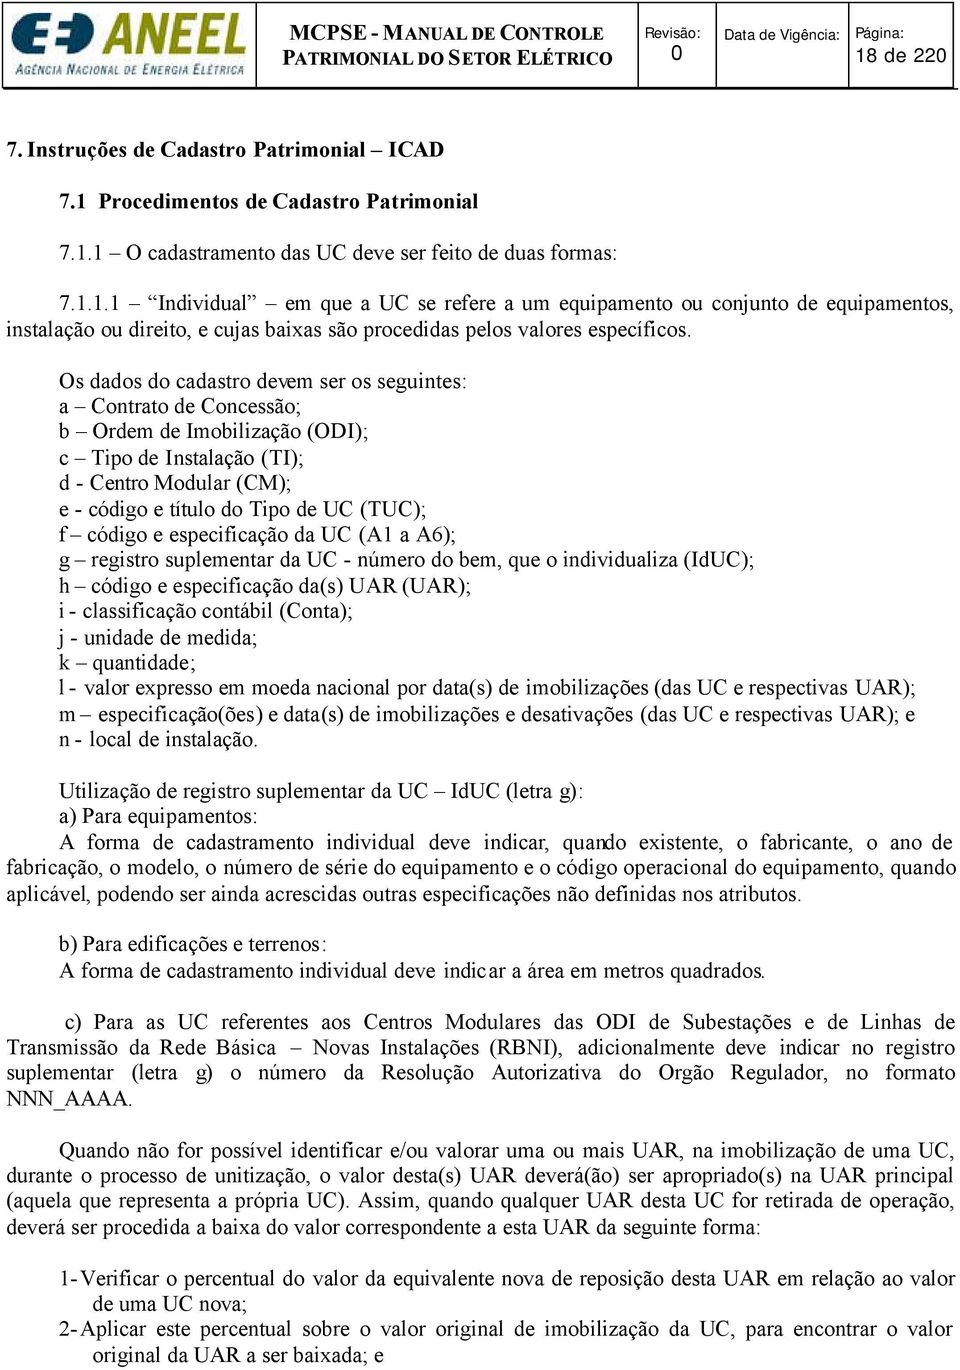 código e especificação da UC (A1 a A6); g registro suplementar da UC - número do bem, que o individualiza (IdUC); h código e especificação da(s) UAR (UAR); i - classificação contábil (Conta); j -